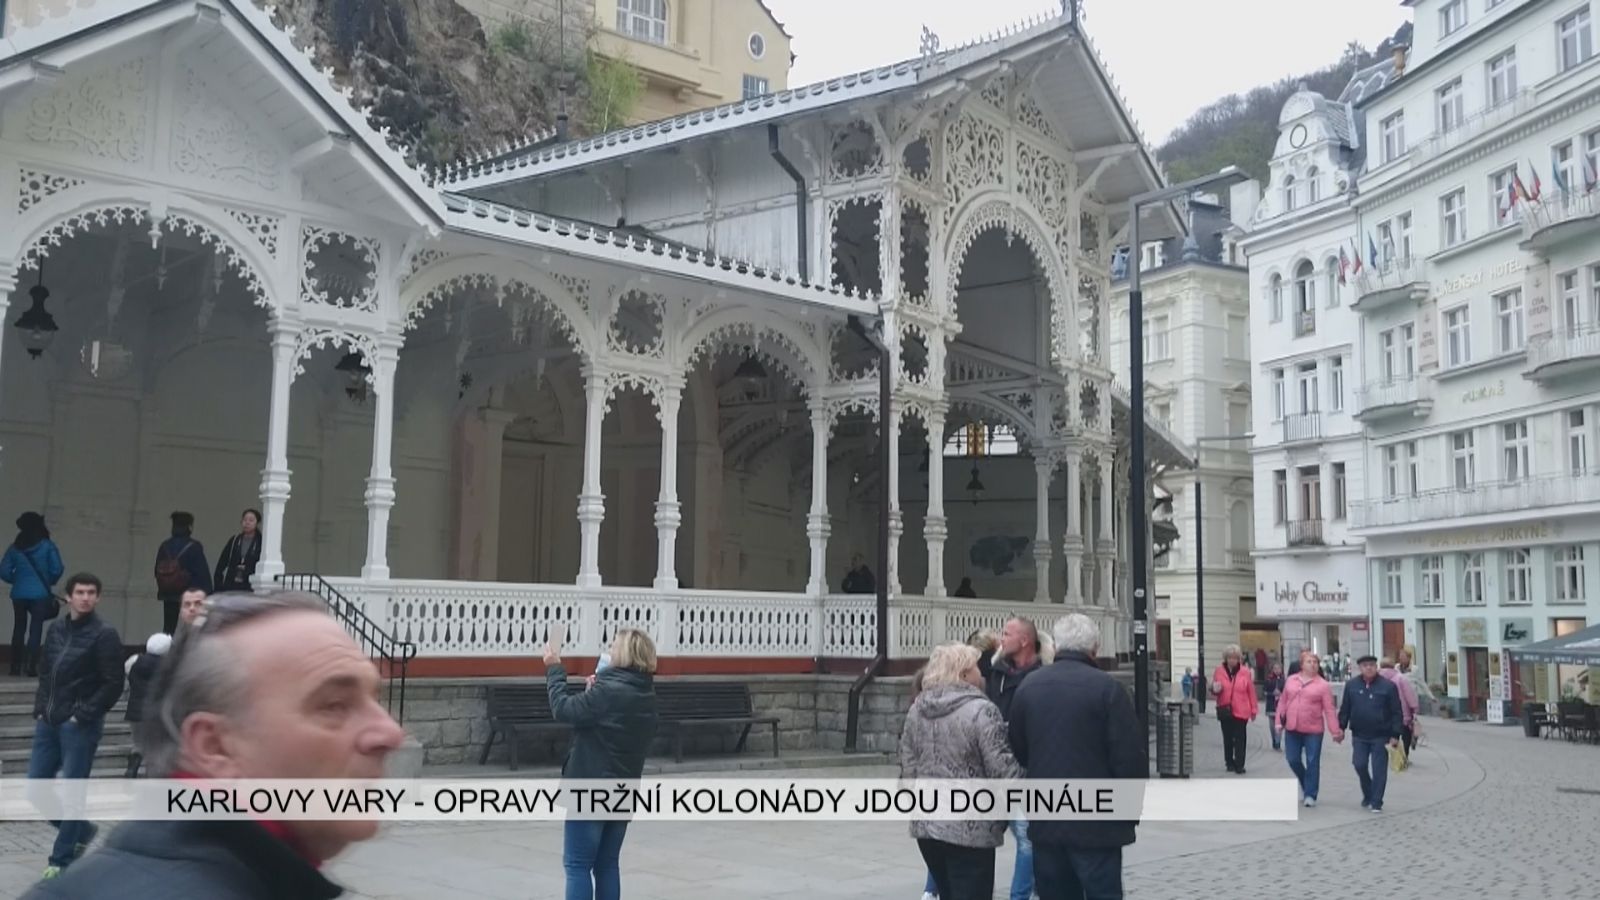 Karlovy Vary: Opravy Tržní kolonády jdou do finále (TV Západ)